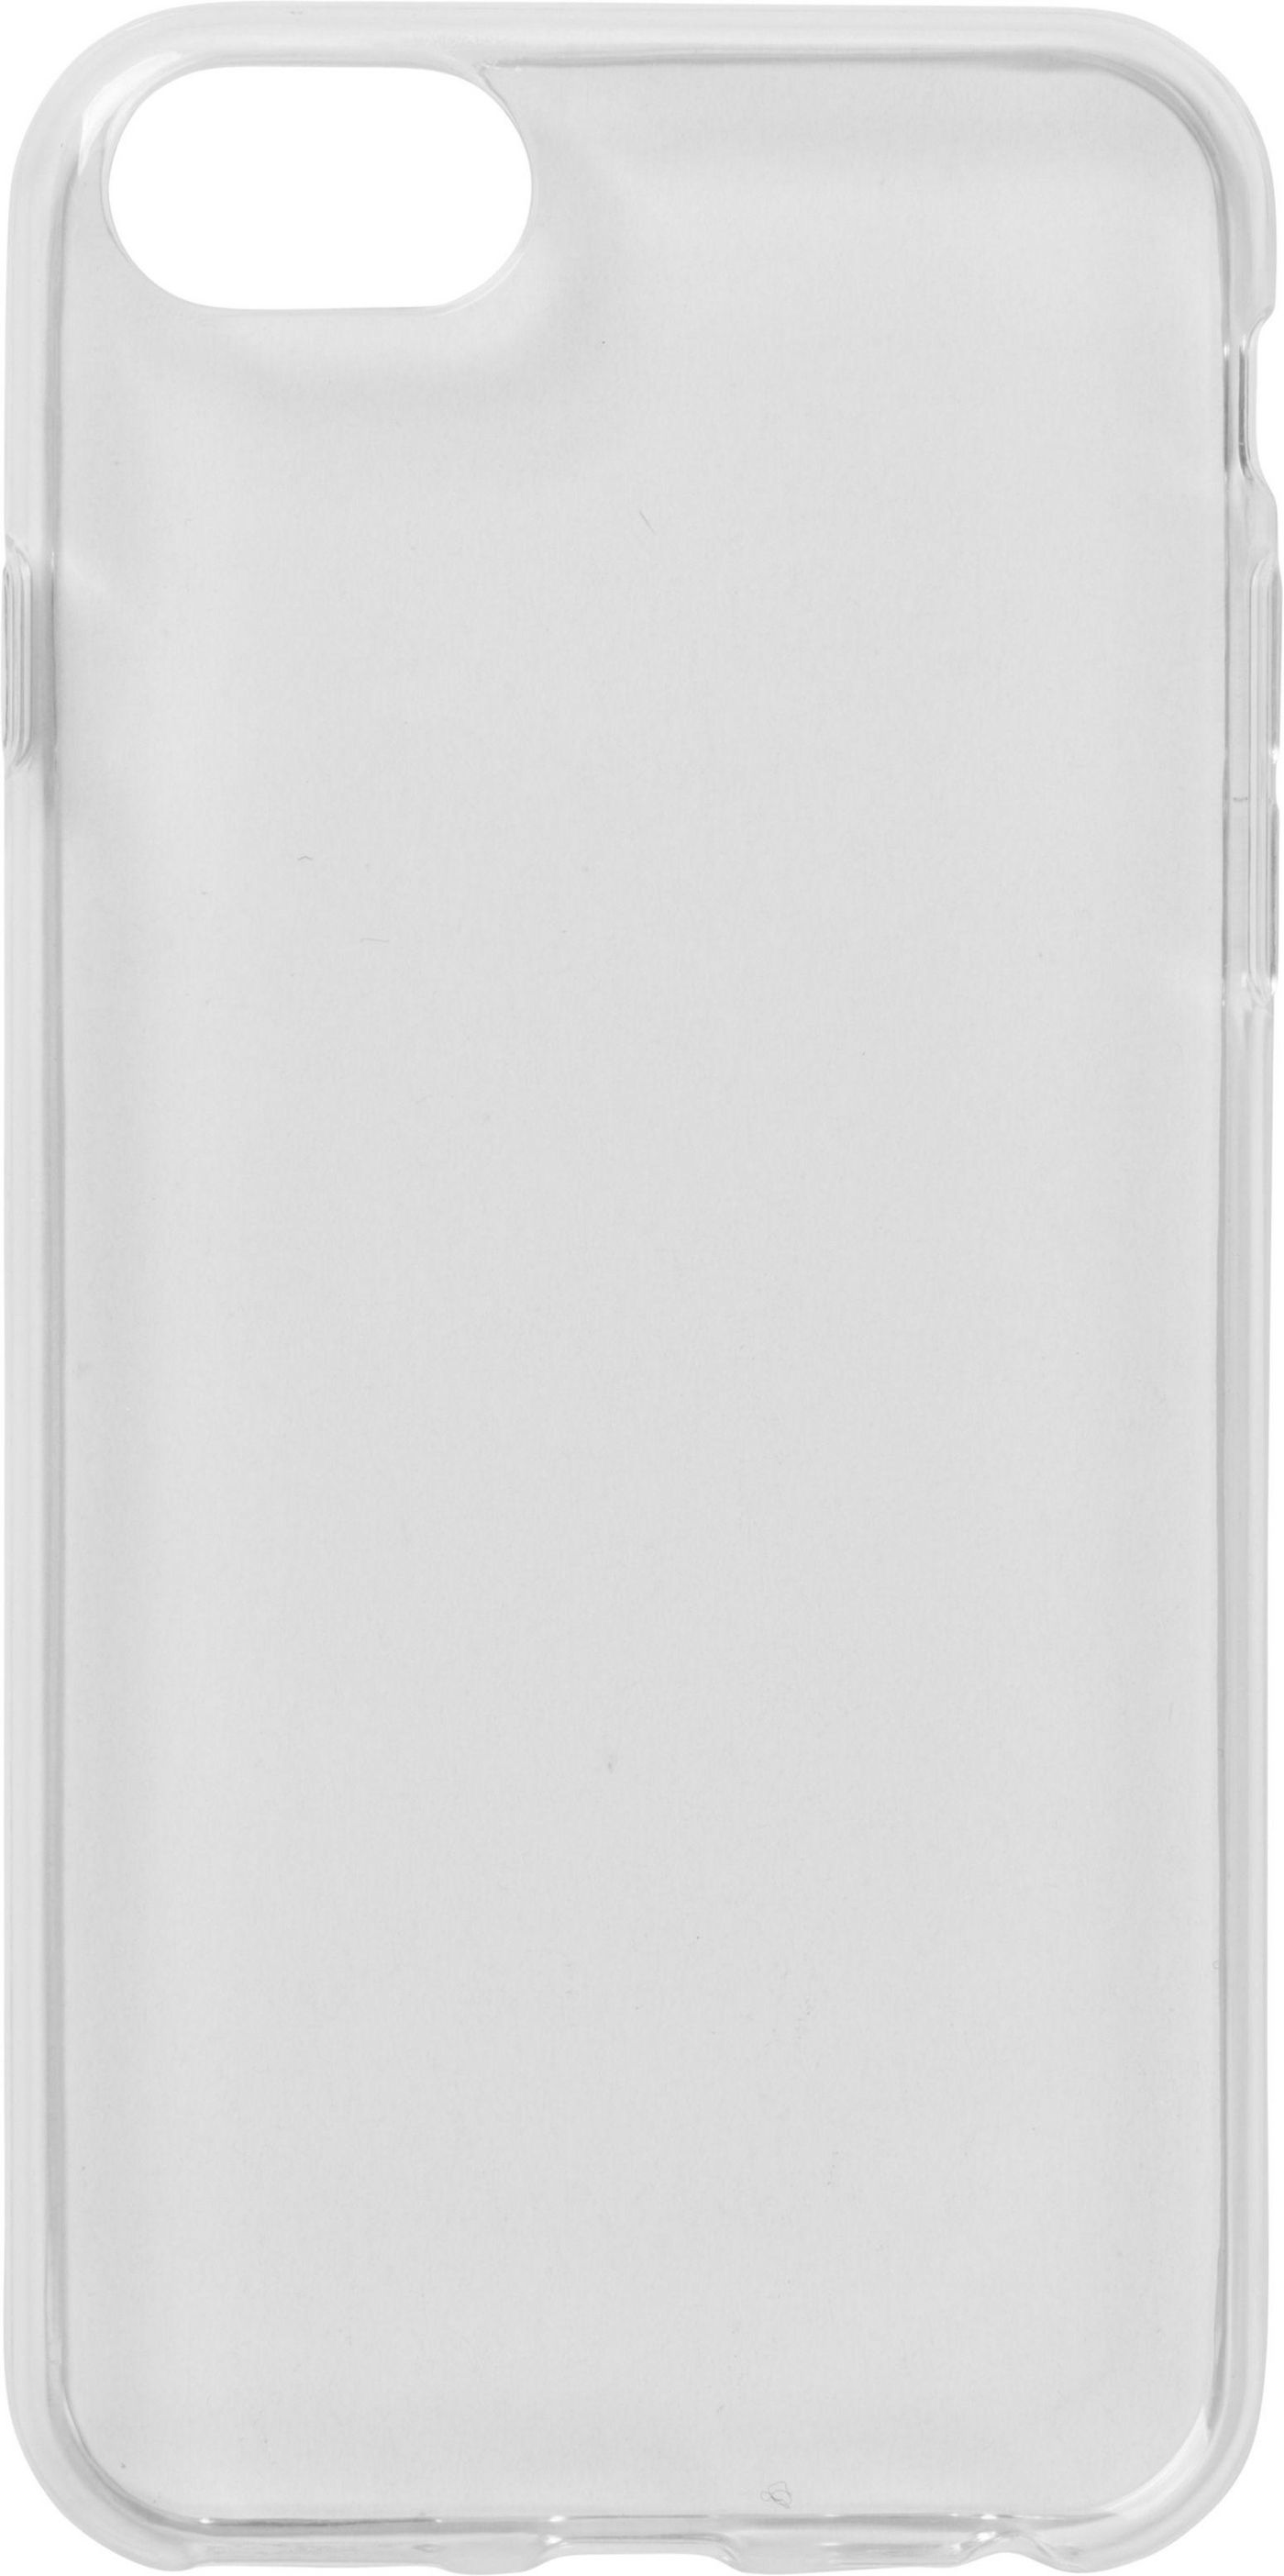 iPhone 6s/7/8 Soft Case Clear Ultra-slim (es671040)